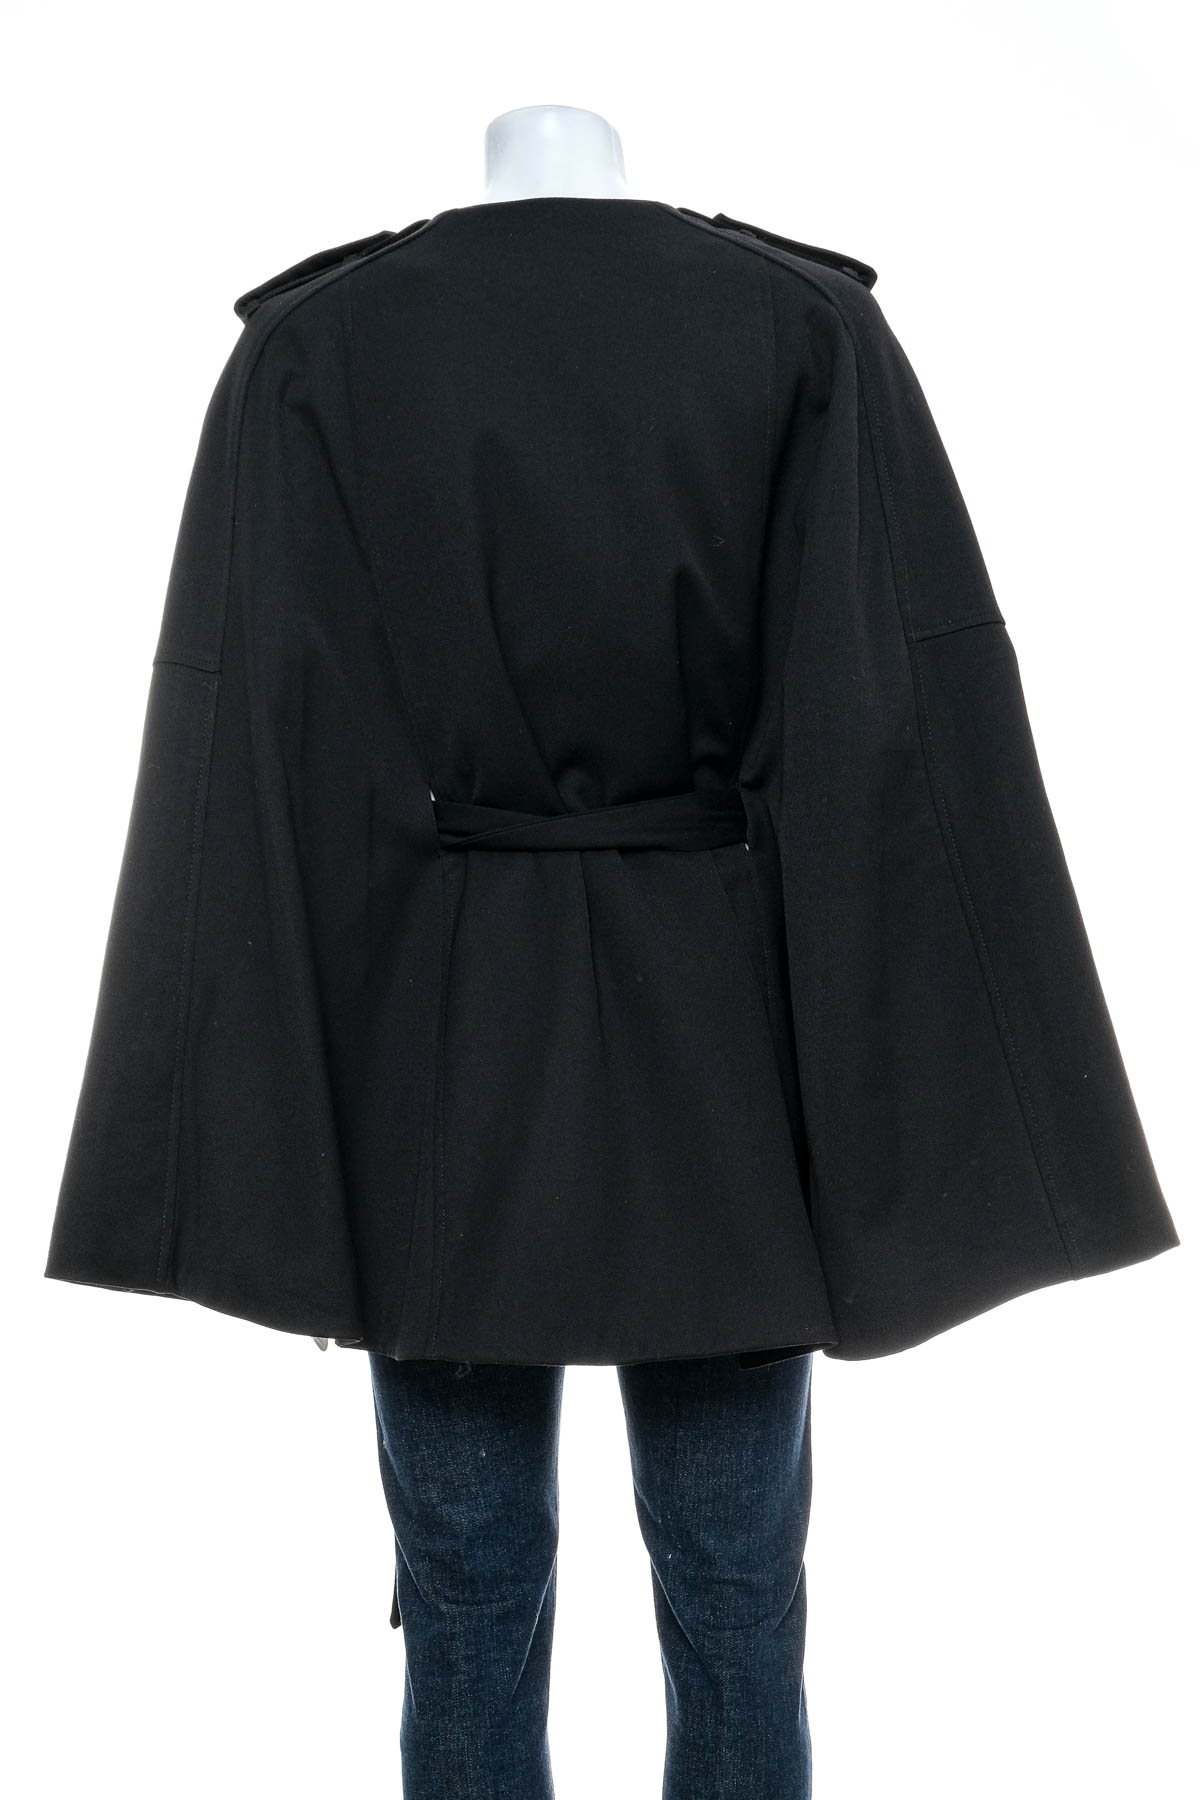 Γυναικείο παλτό - H&M - 1